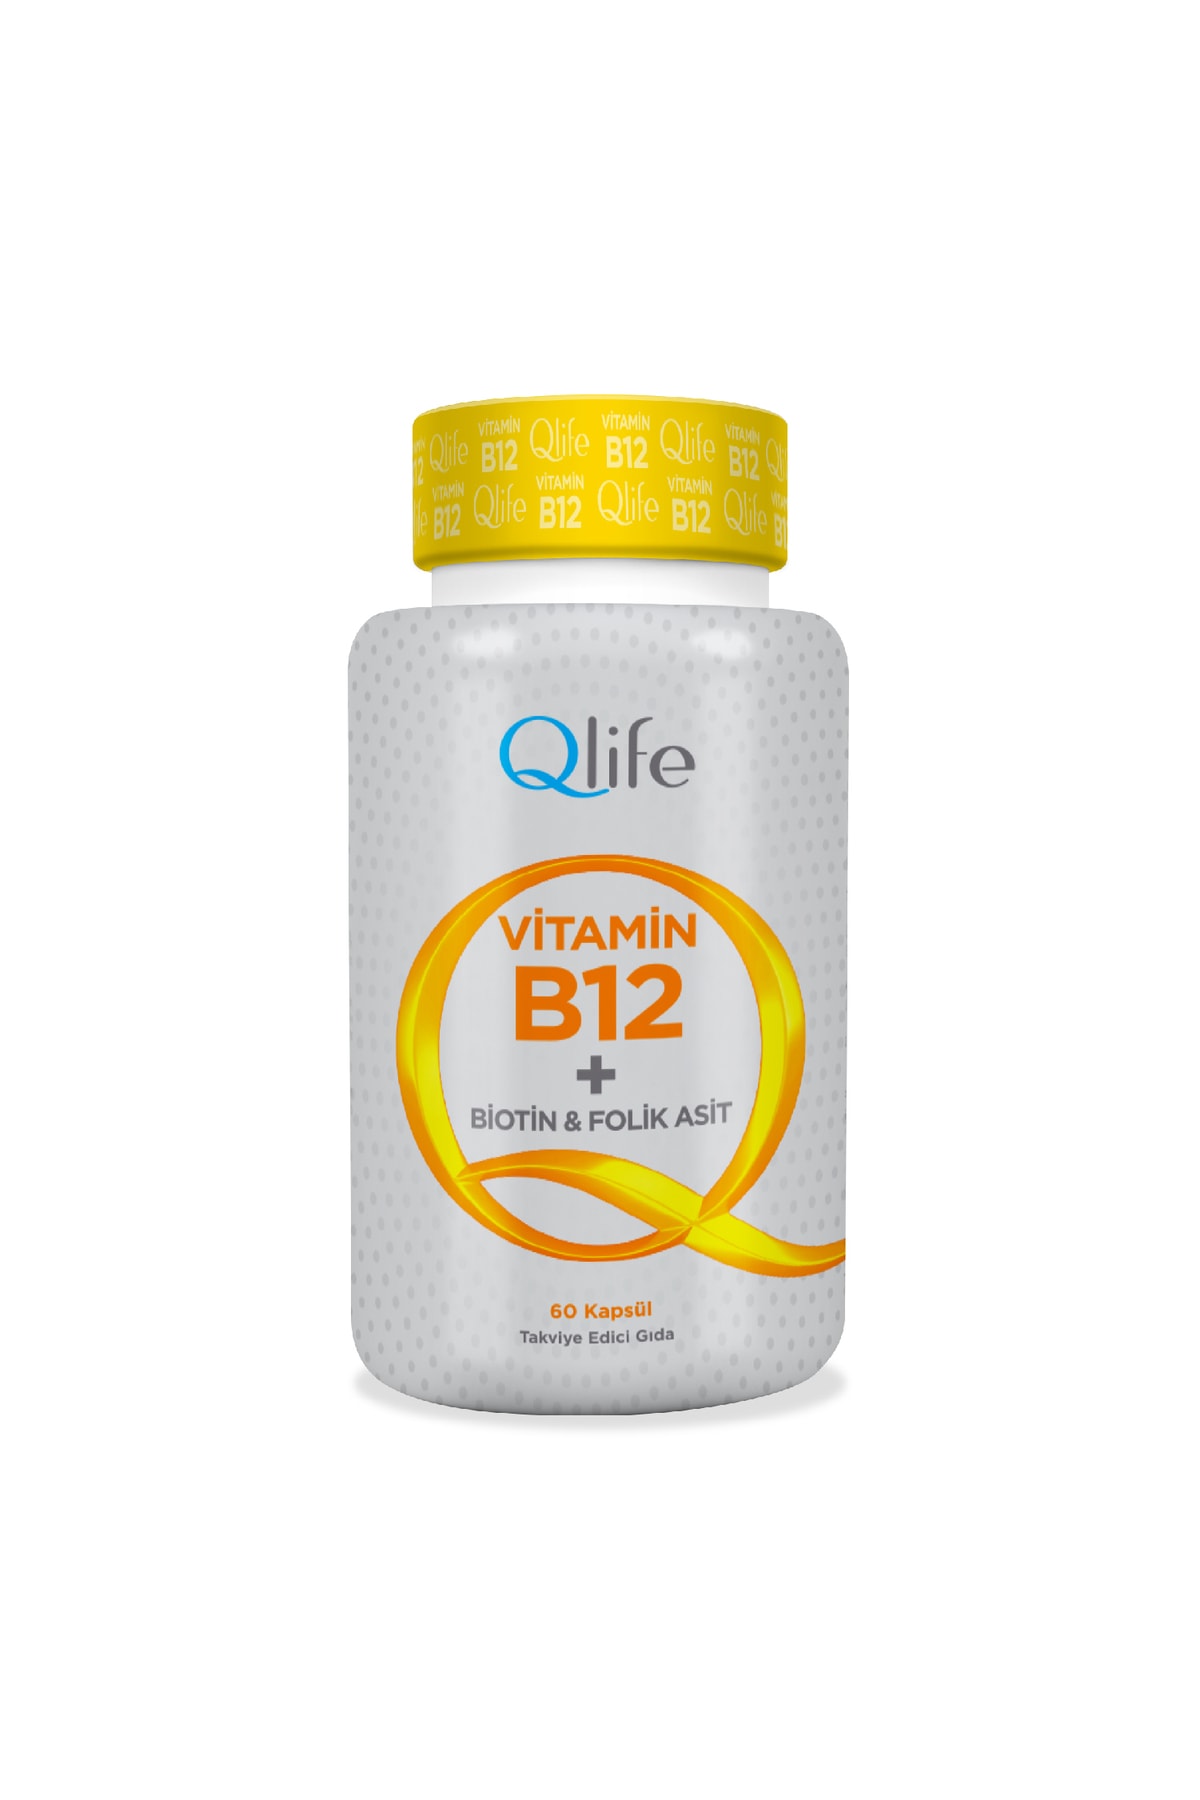 Qlife Qlife Vitamin B12 + Biotin & Folik Asit 60 Kapsül